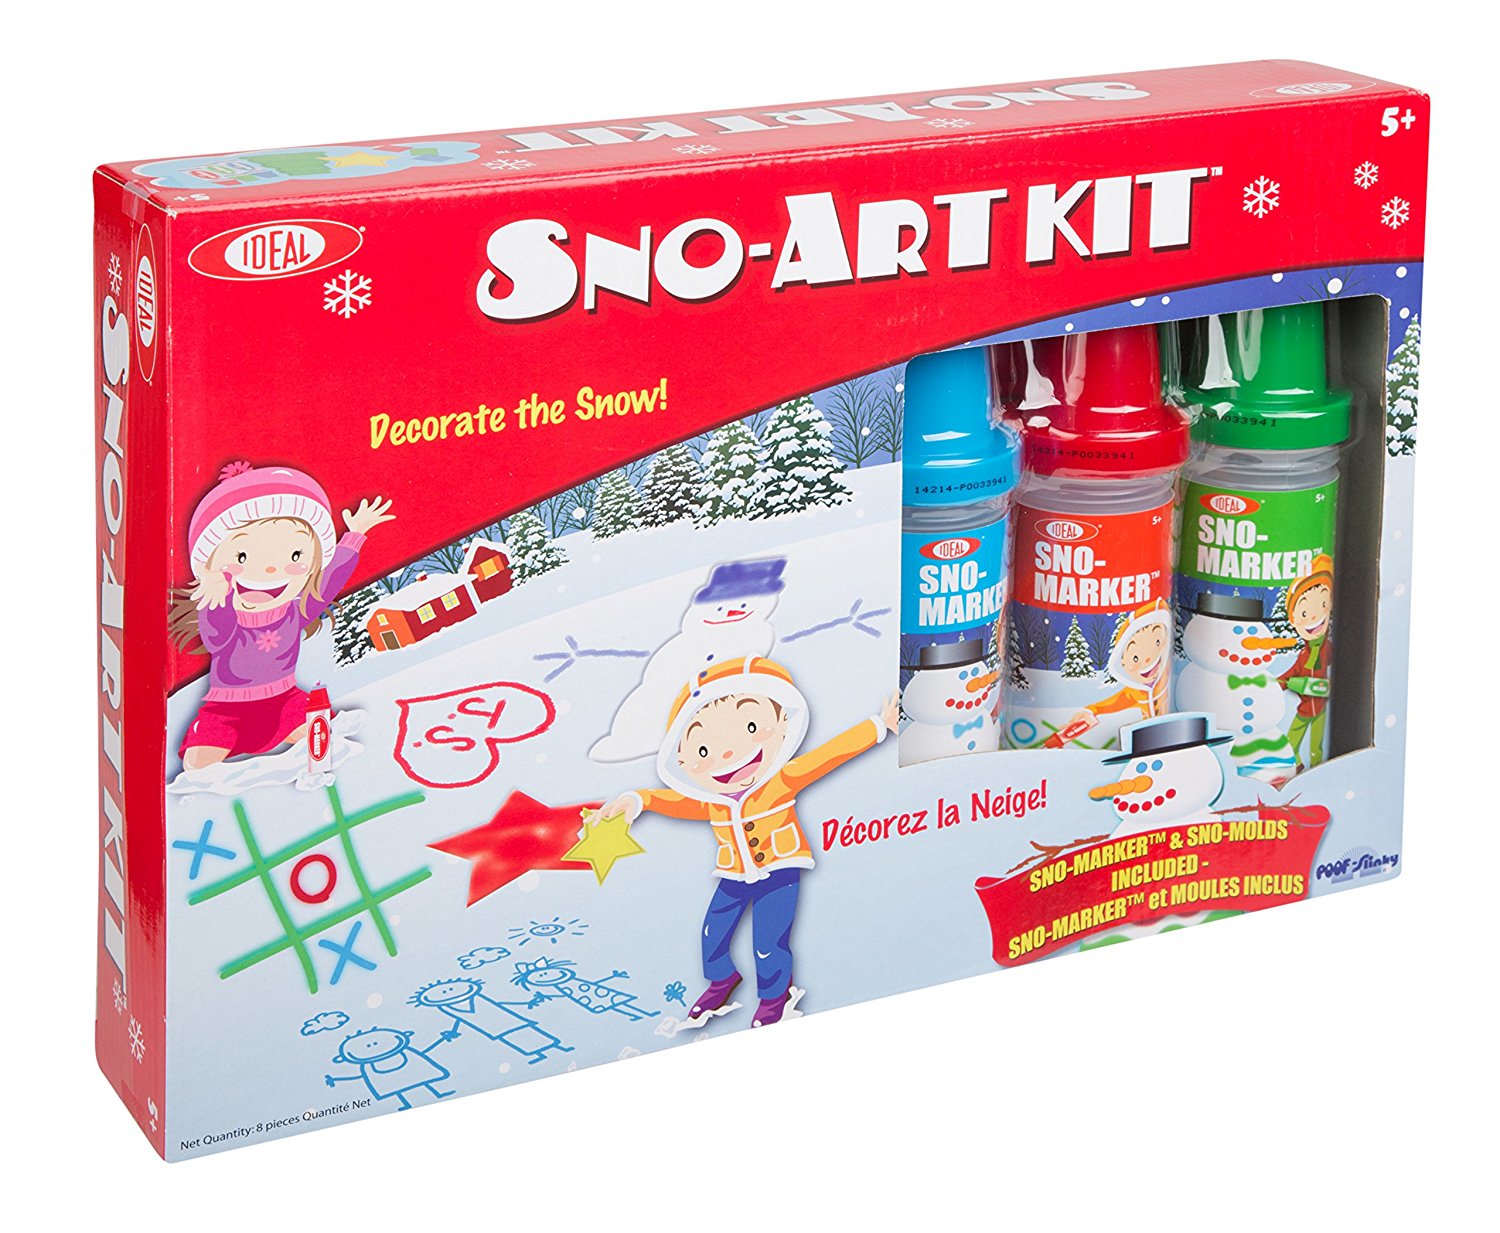 Amazon: Ideal Sno Toys Sno-ARt Kit Only $9.97! (Reg $22.99)